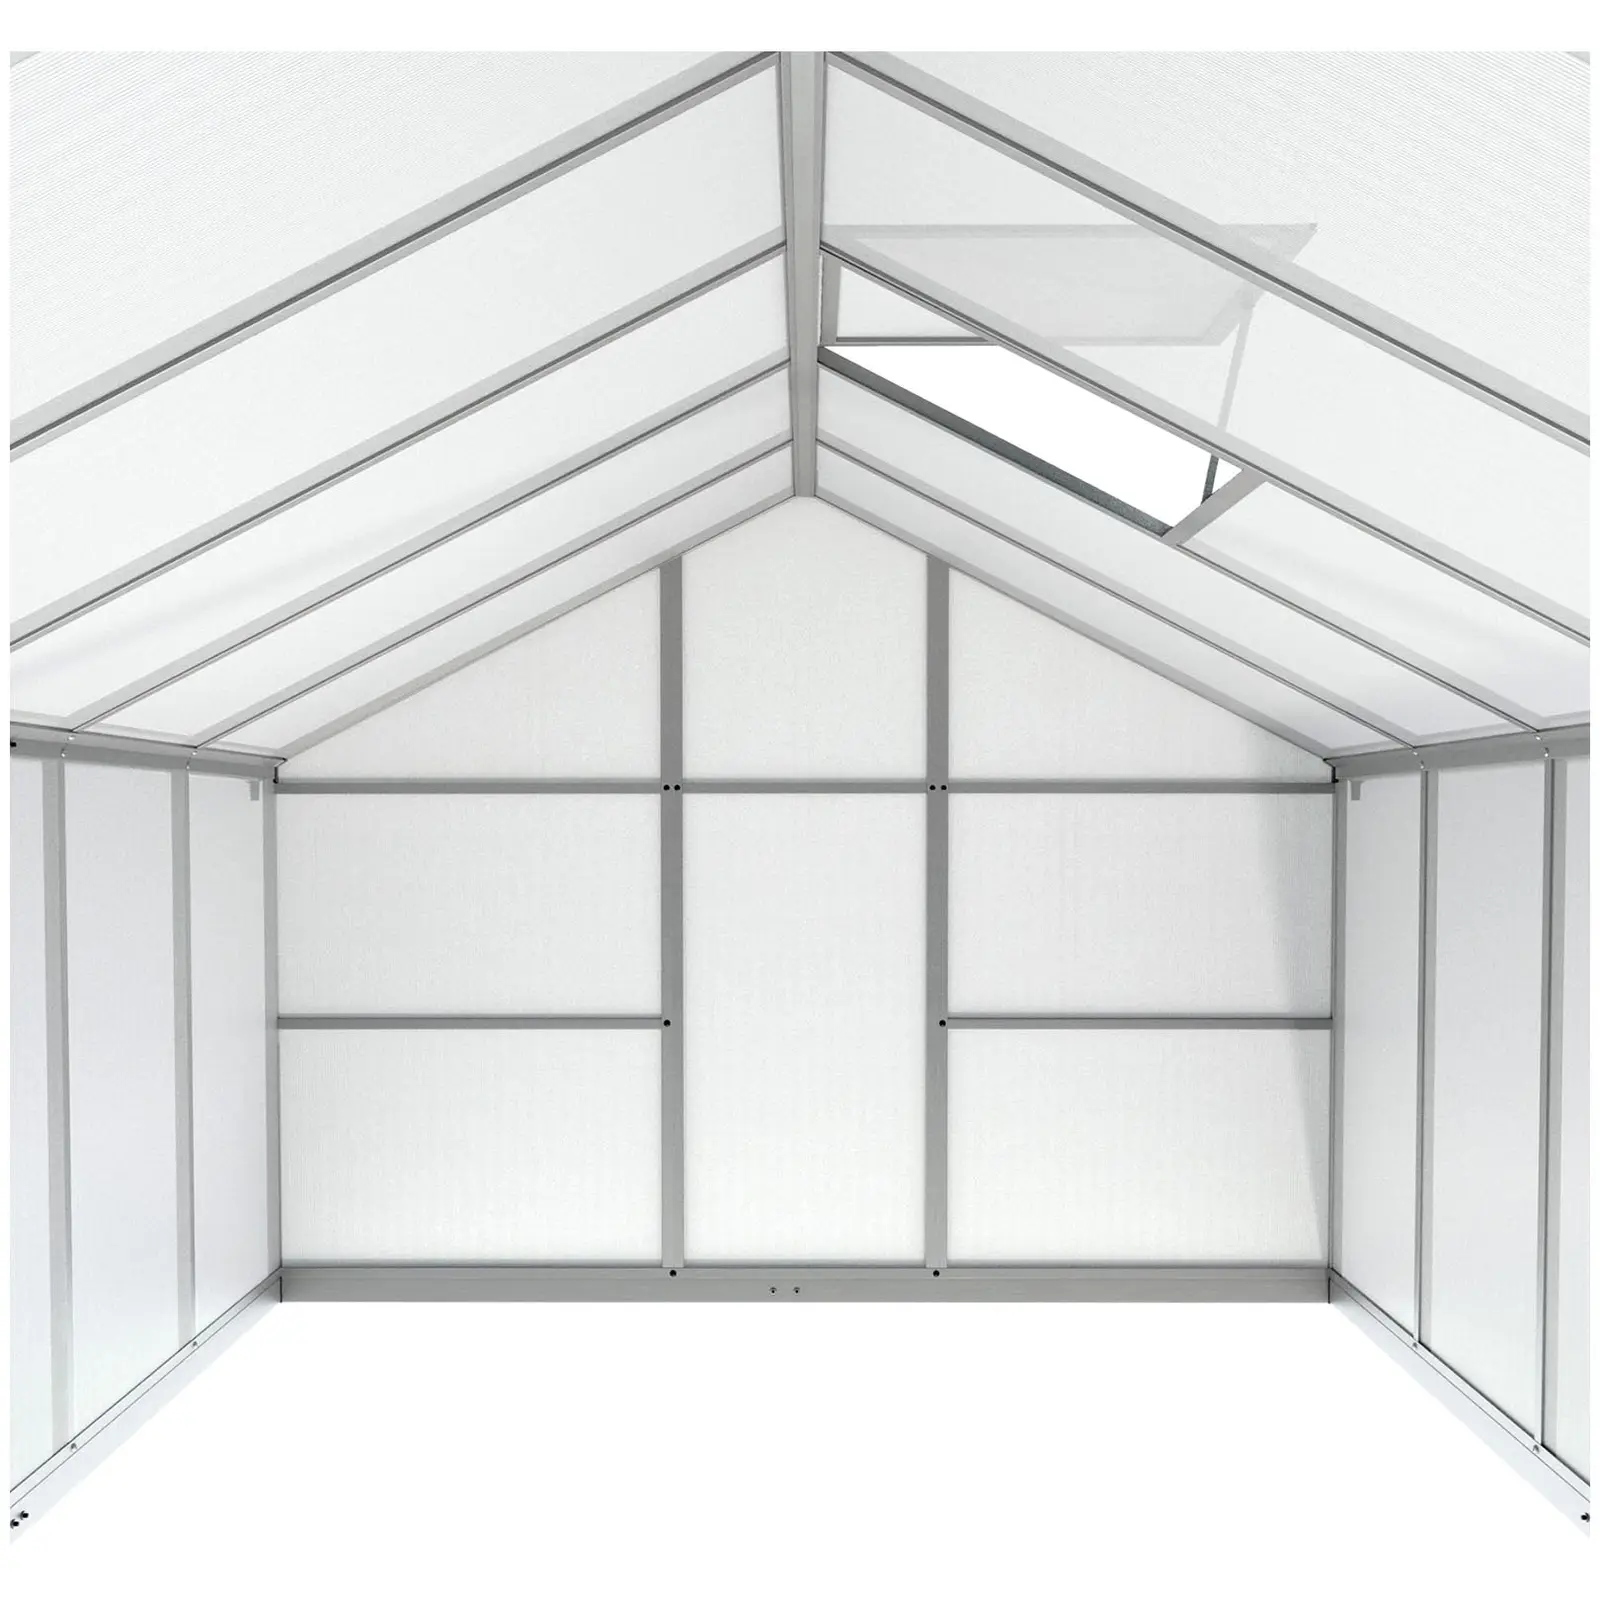 Greenhouse - 301 x 238 x 195 cm - polycarbonate + aluminium